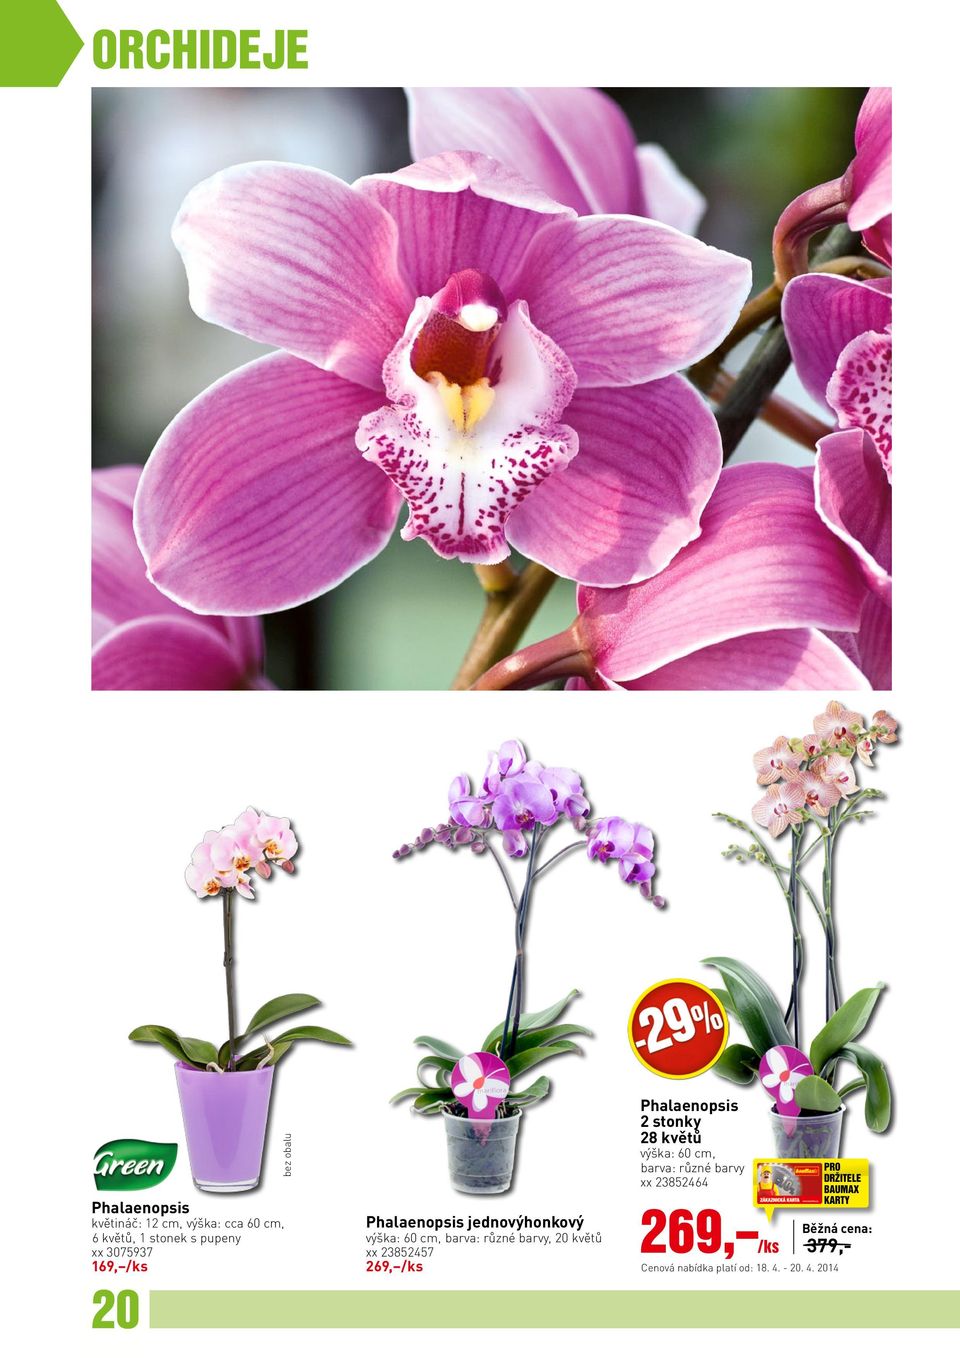 23852457 269, /ks Phalaenopsis 2 stonky 28 květů výška: 60 cm, barva: různé barvy xx 23852464